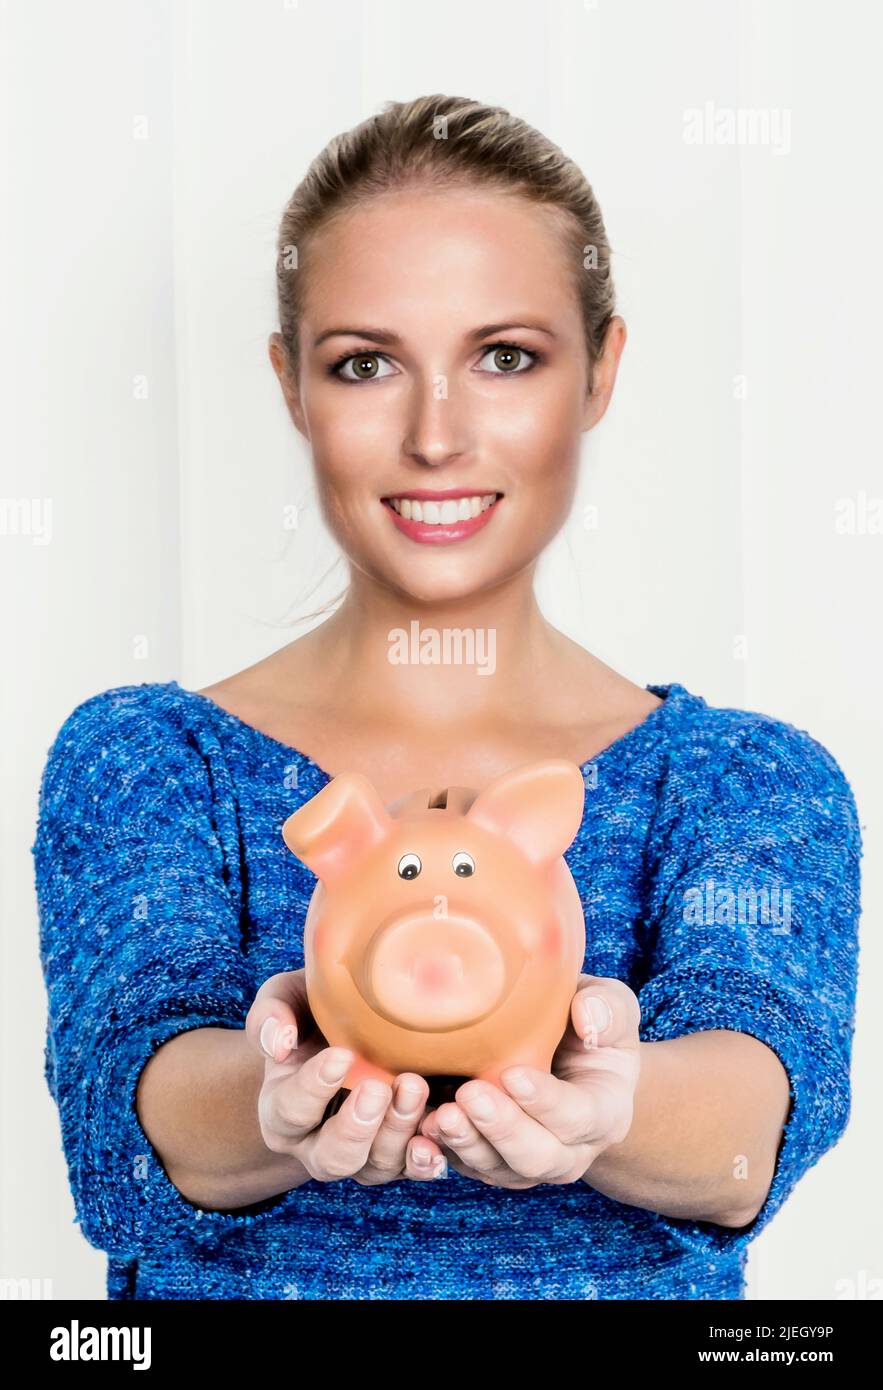 Eine junge Frau hält ein Sparschwein in ihrer Hand. Symbolfoto für Sparen, Geld anlegen und Altersvorsorge. Stock Photo